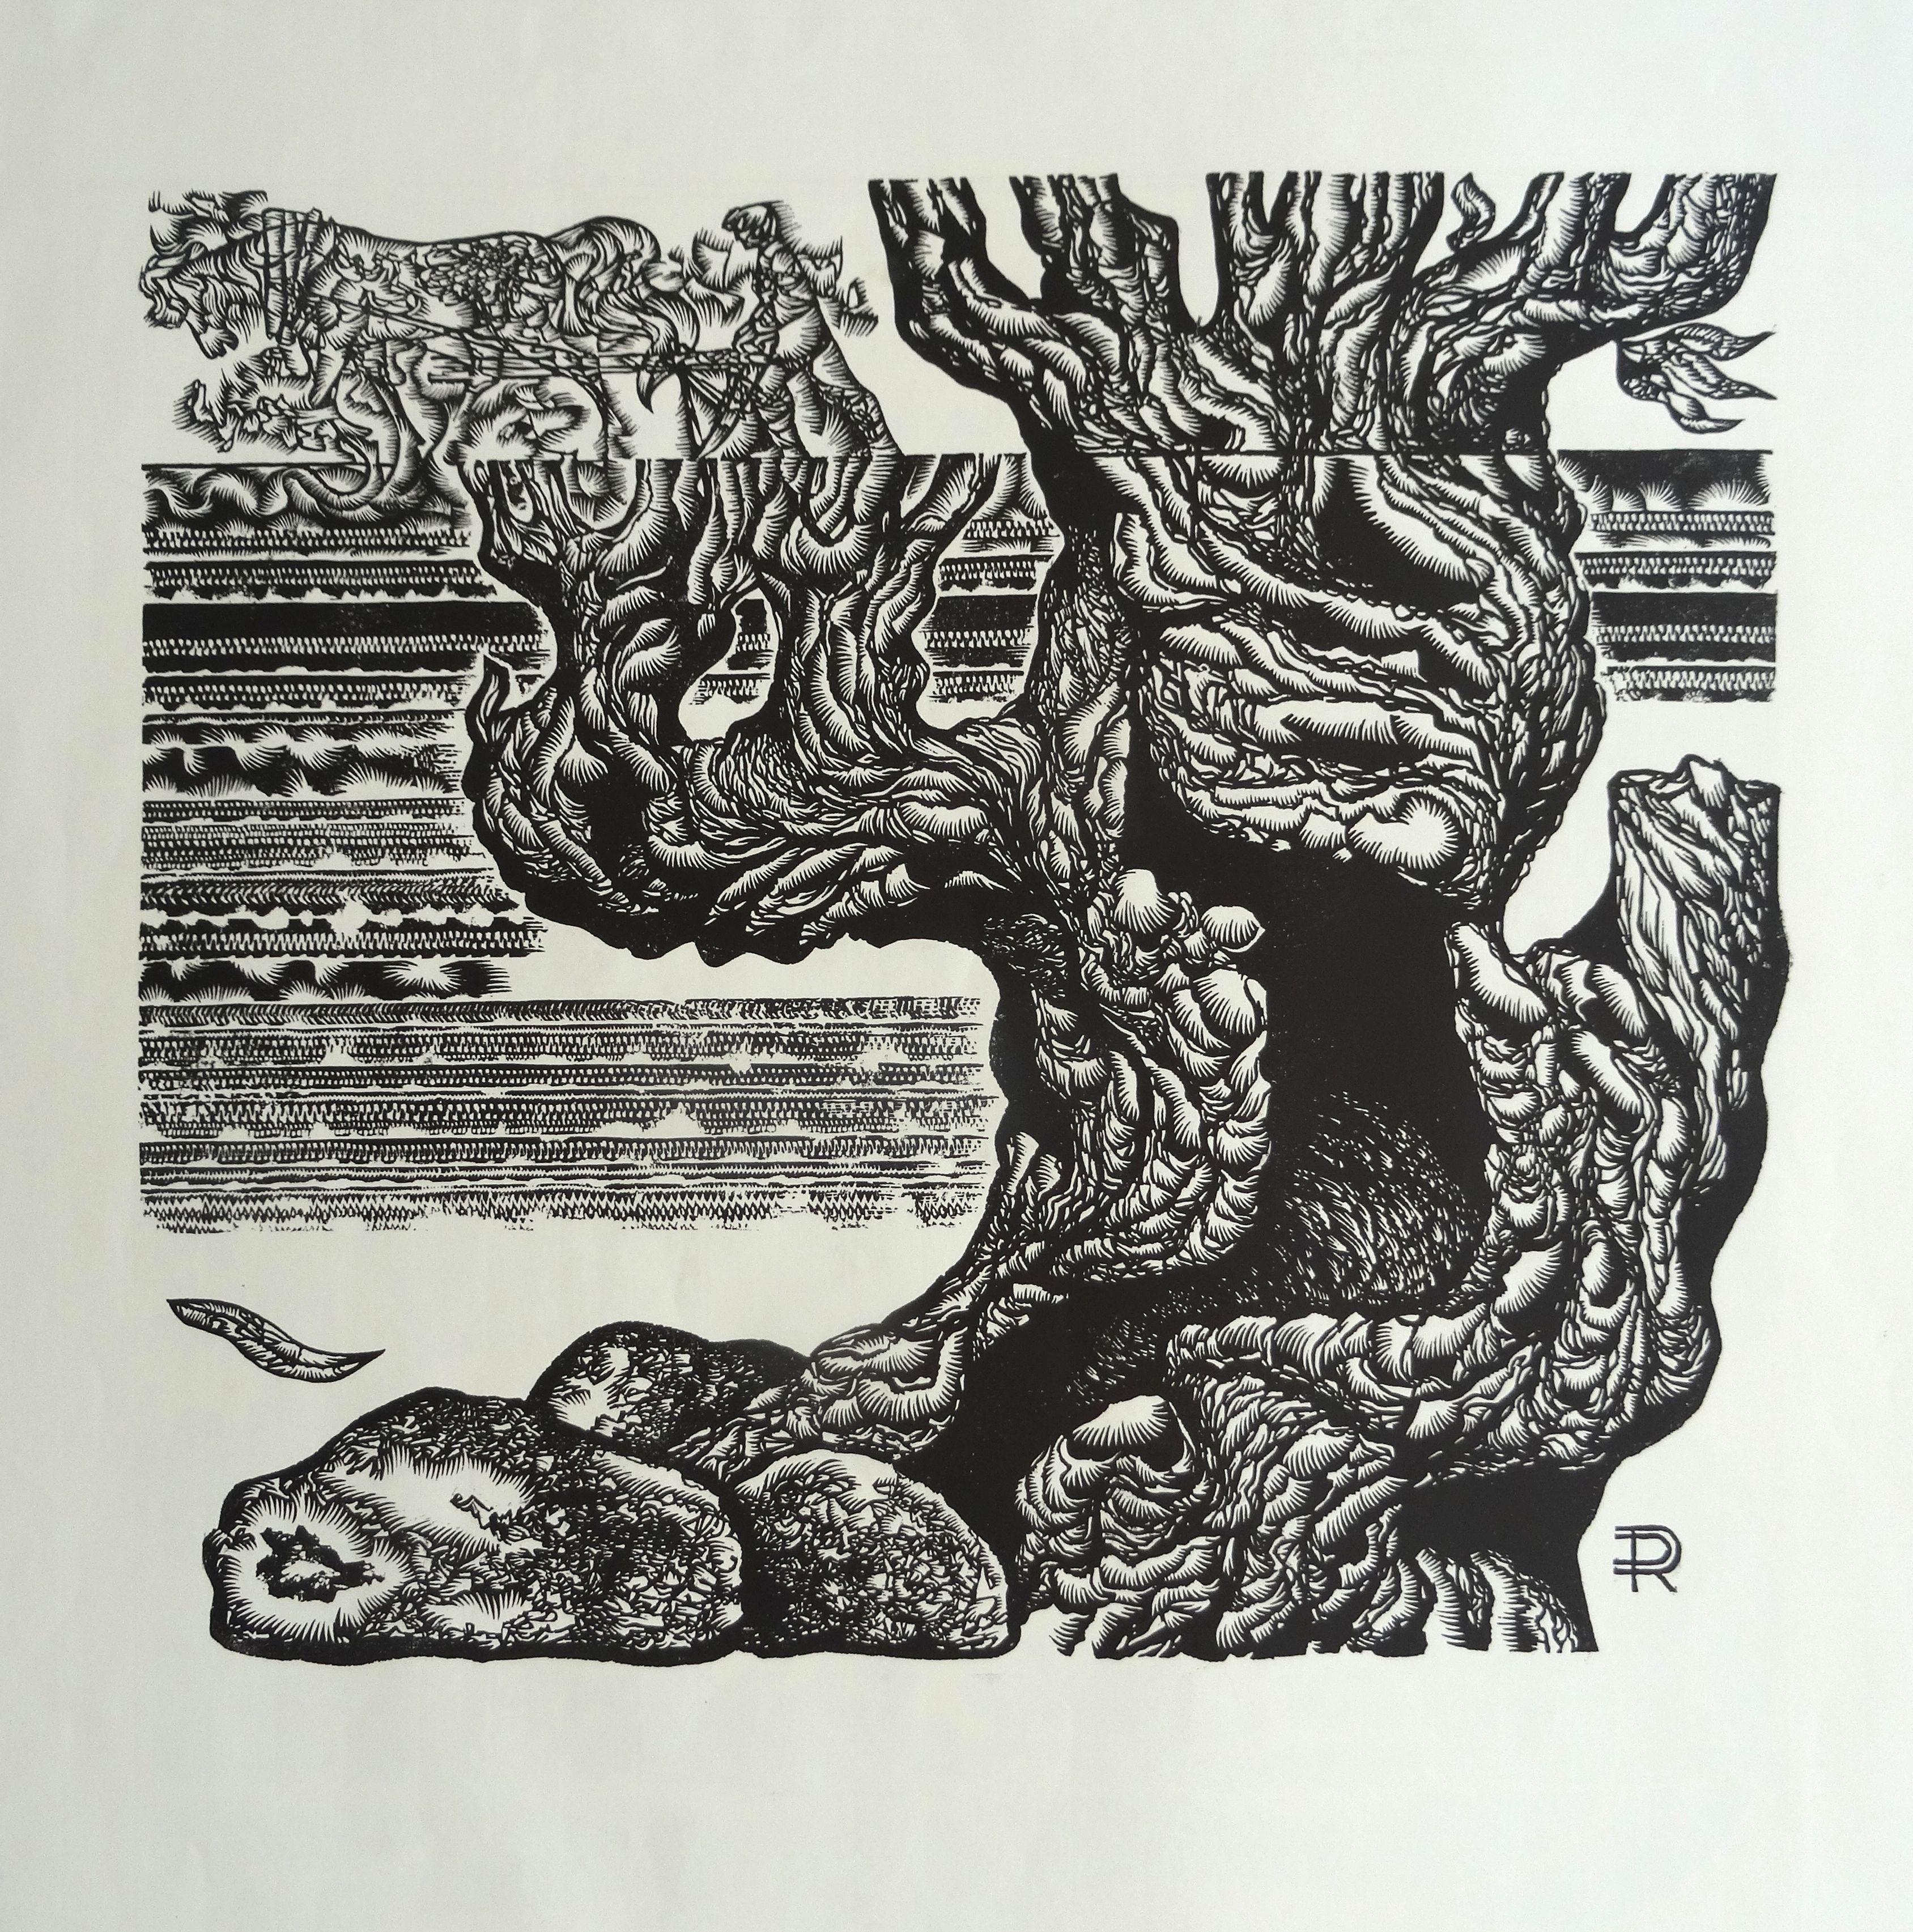 Großvaterbaum. 1982, Papier, Linolschnitt, Druckgröße 50x55 cm; insgesamt 65x65 cm